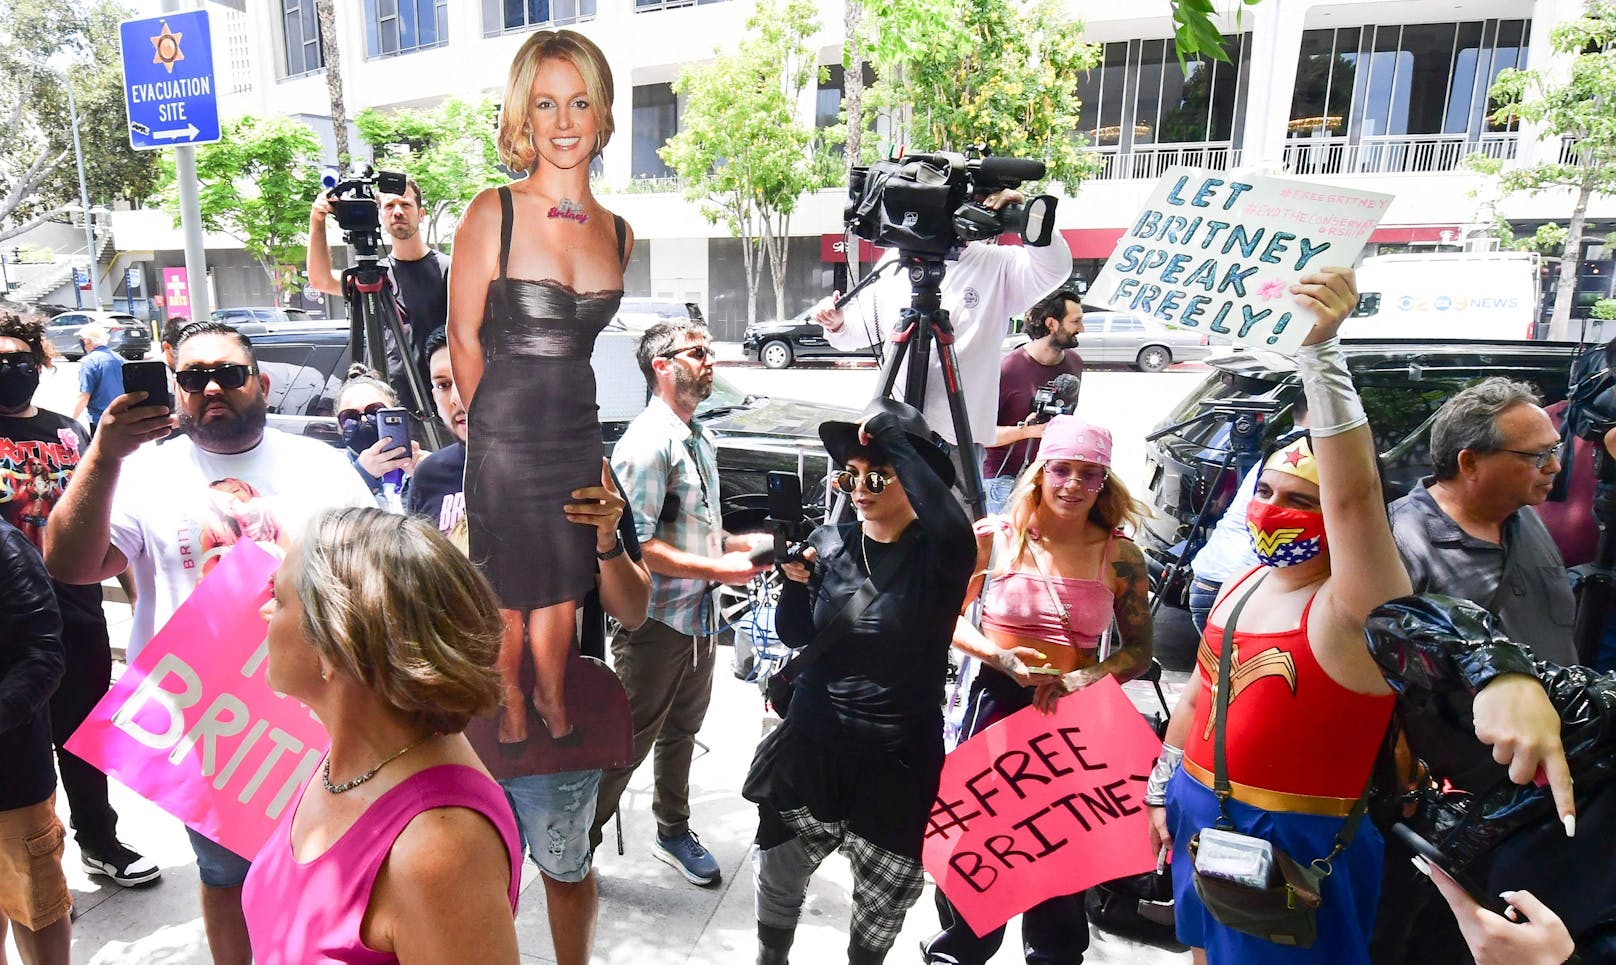 Free Britney Spears, Vor dem Gerichtsaal in Los Angeles kämpfen Britneys Fans für das Ende ihrer Vormundschaft